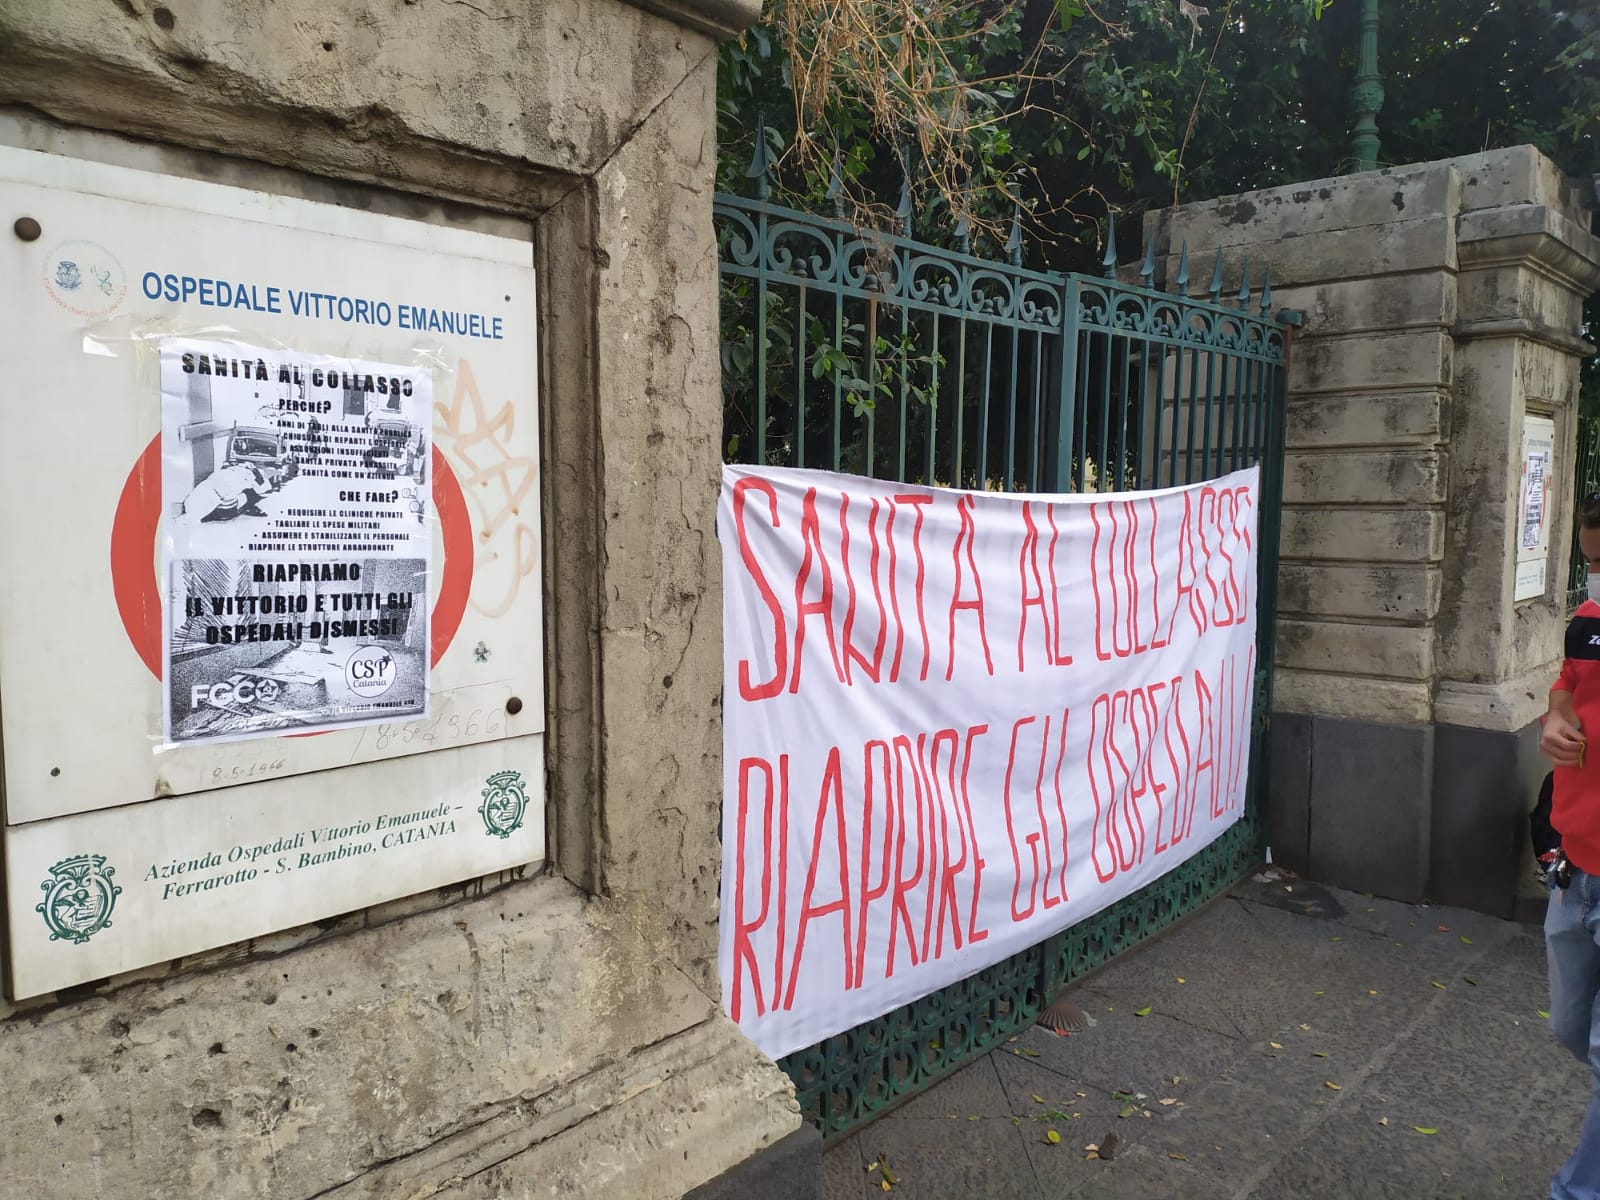 Coronavirus Catania, protesta davanti al Vittorio Emanuele: “Sanità al collasso, riapriamo gli ospedali dismessi”